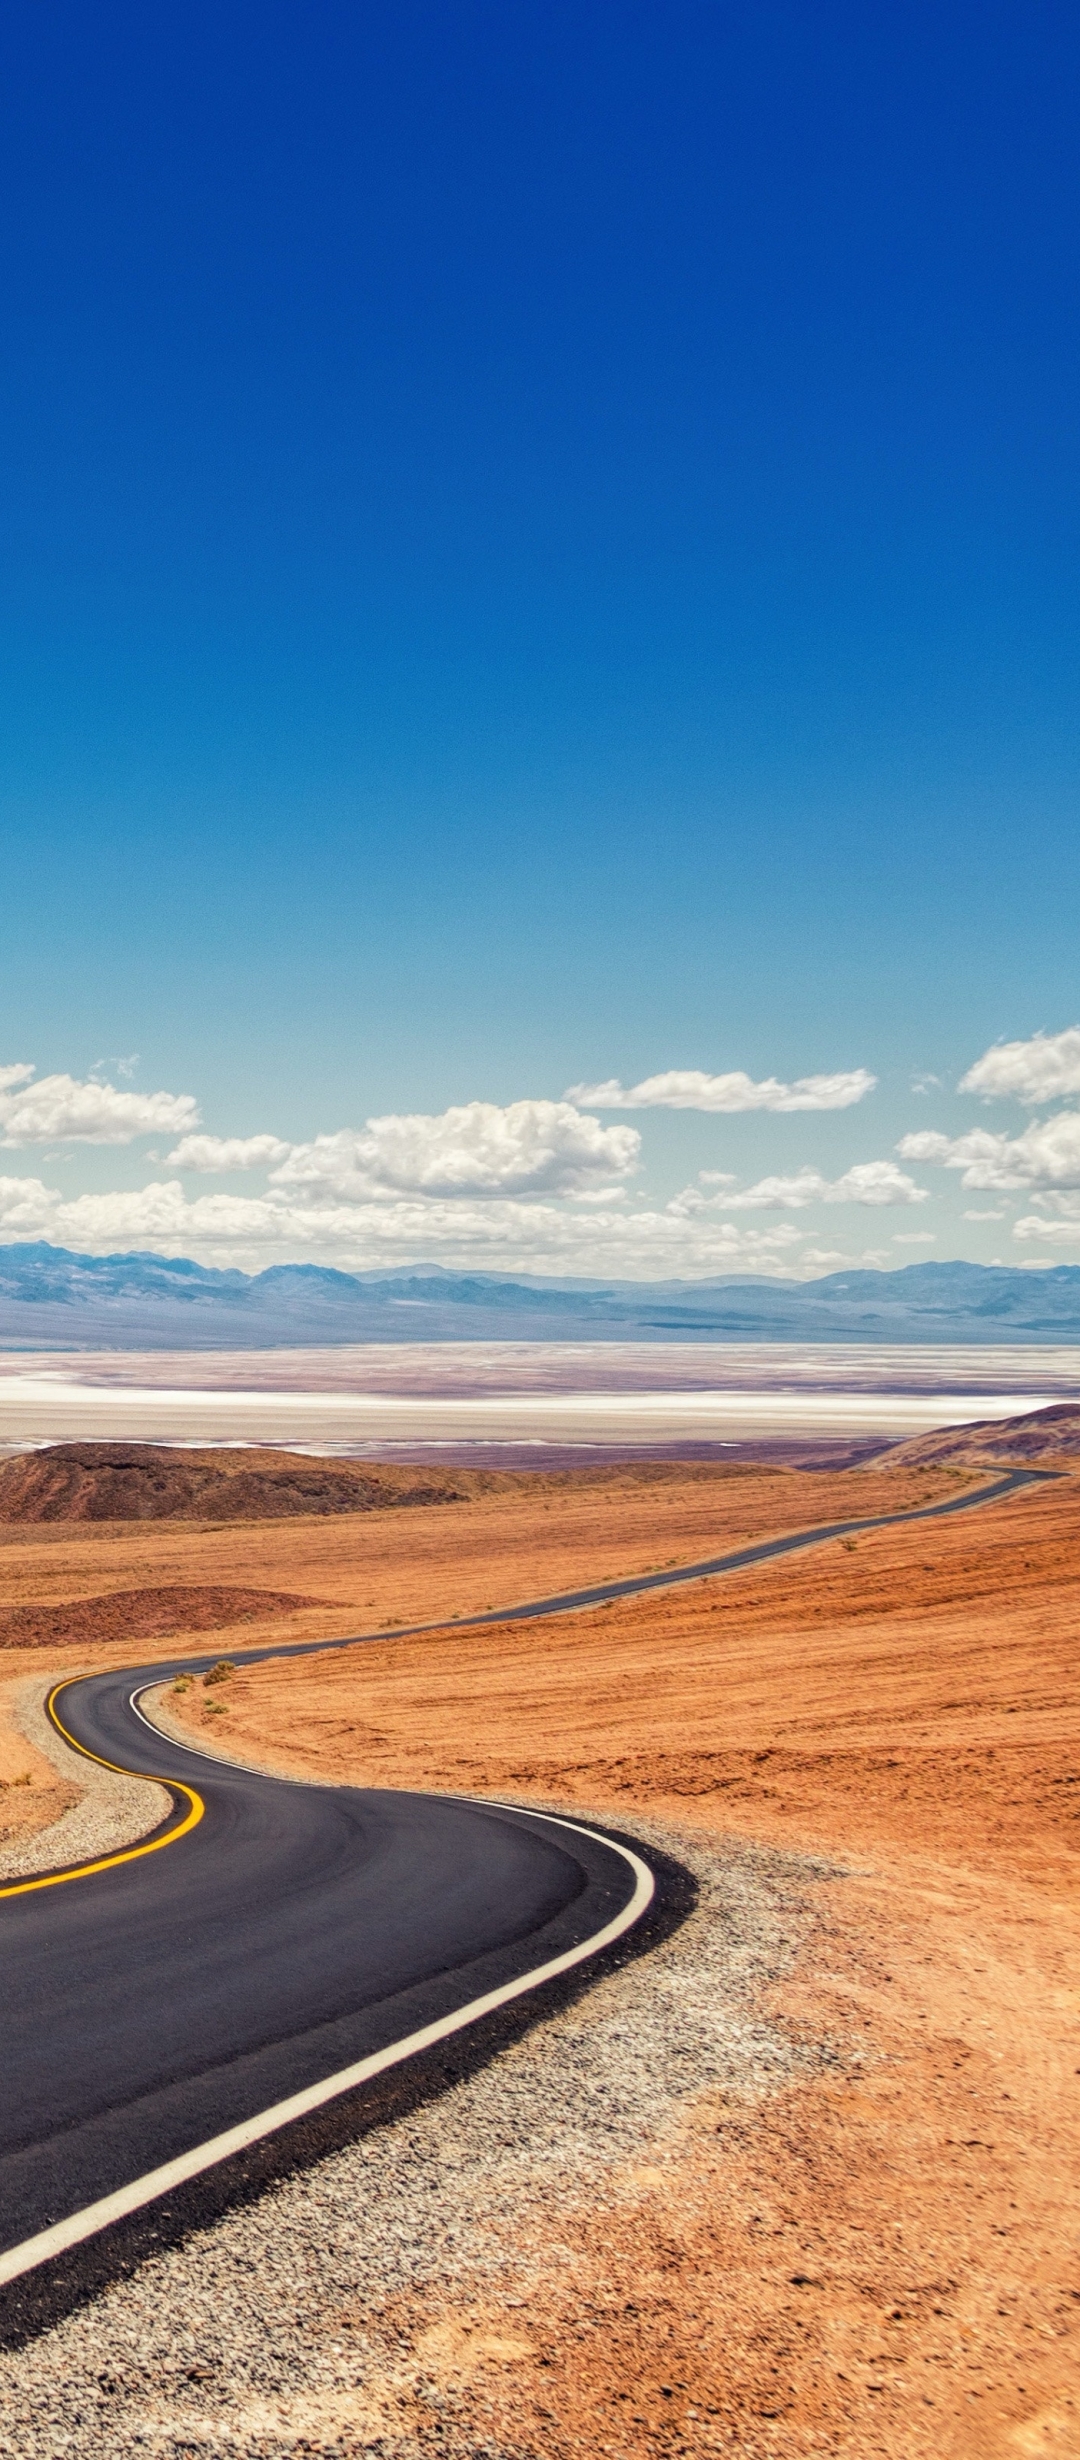 Download mobile wallpaper Landscape, Nature, Sky, Desert, Road, Man Made for free.